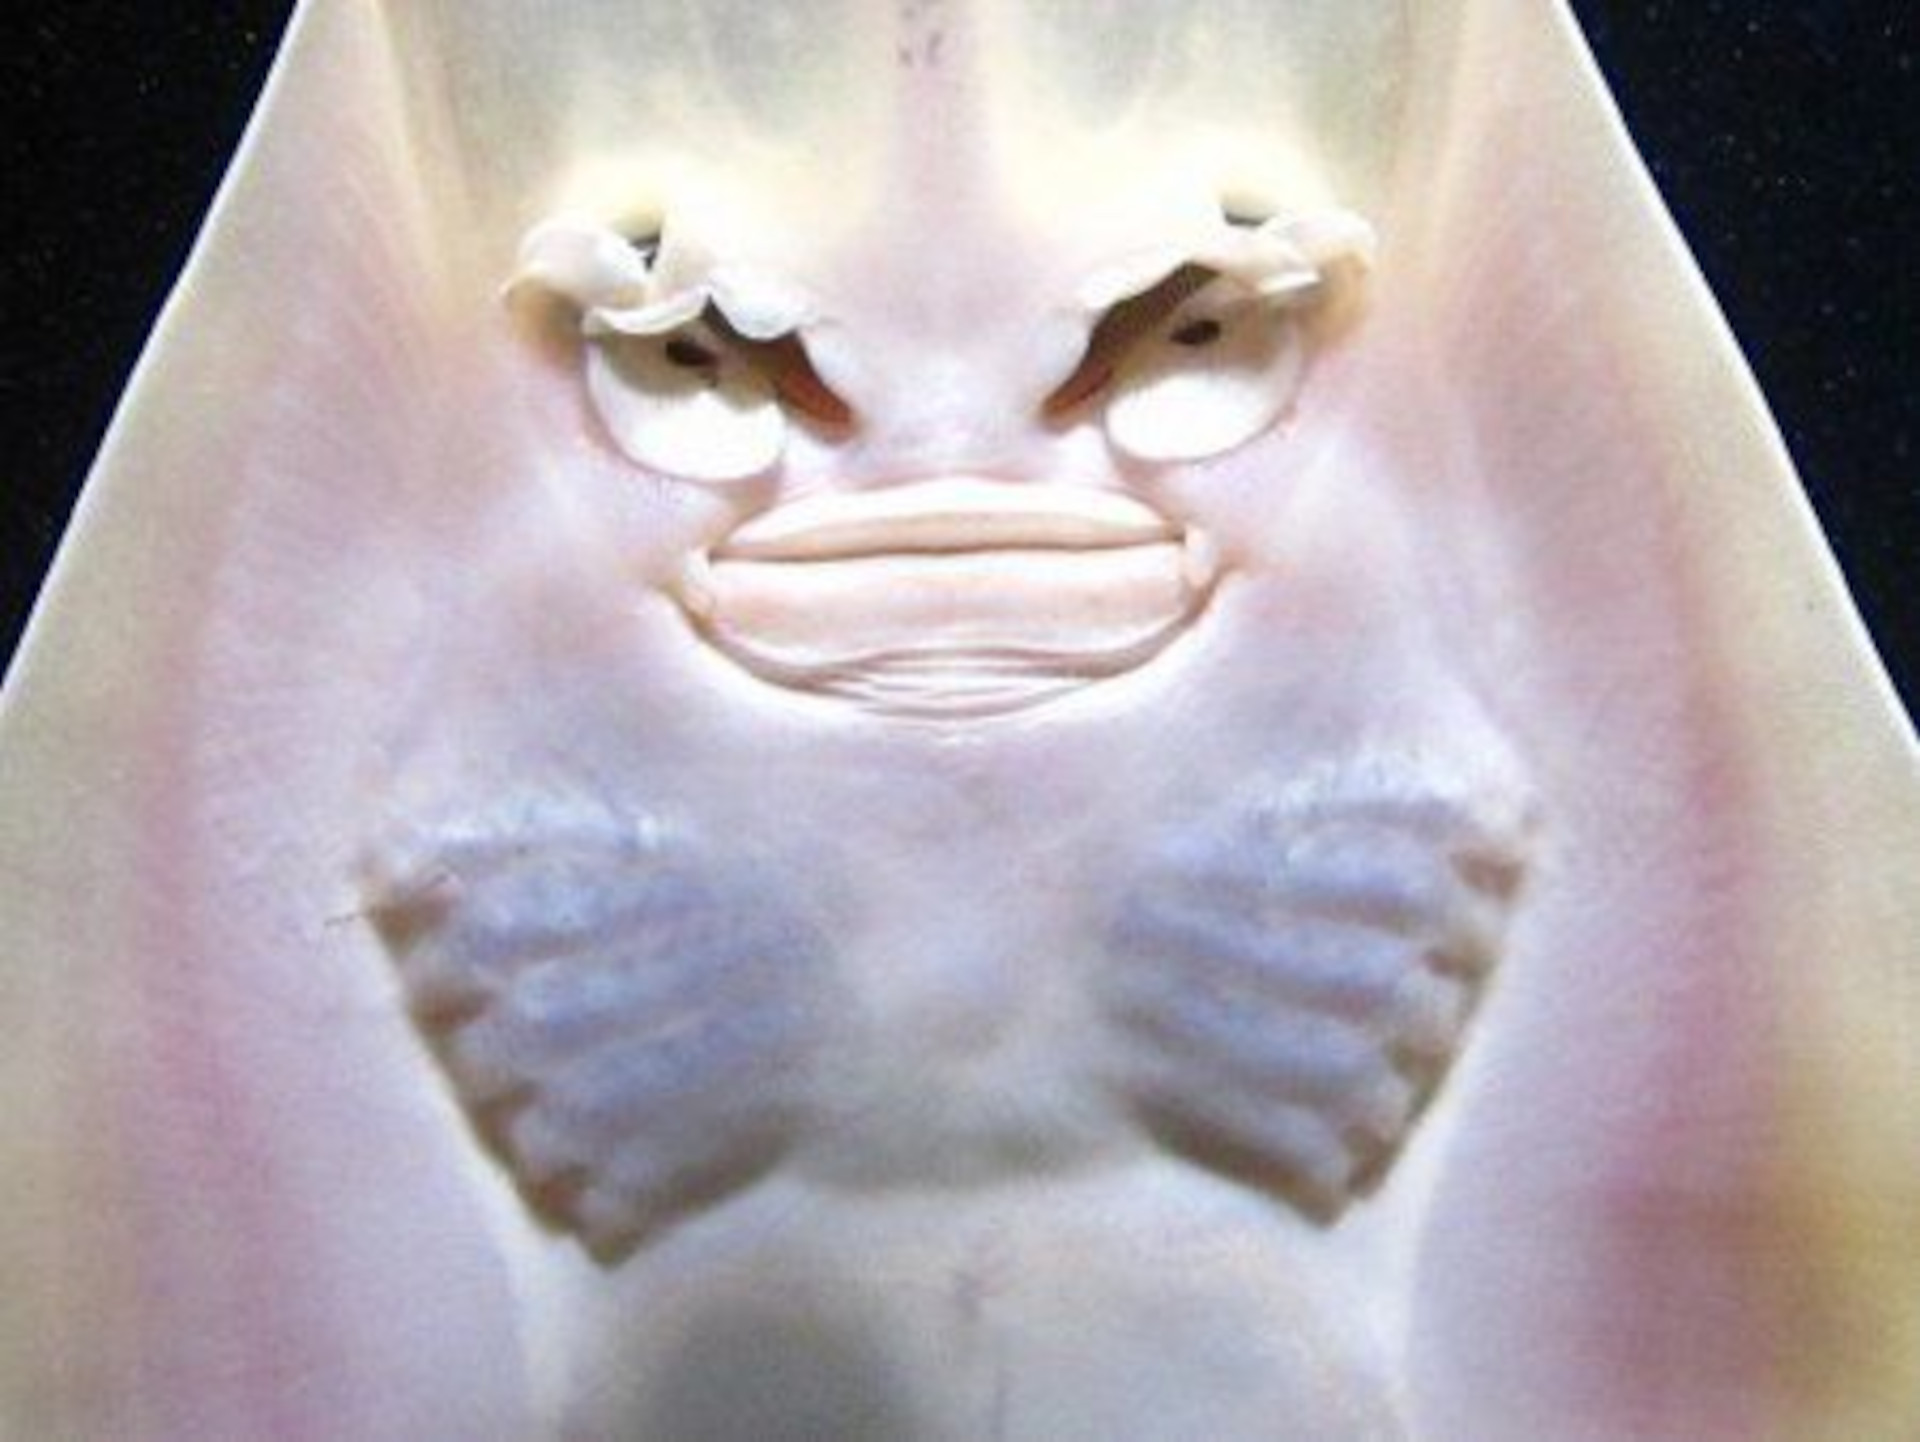 Brown guitarfish or Rhinobatos schlegelii